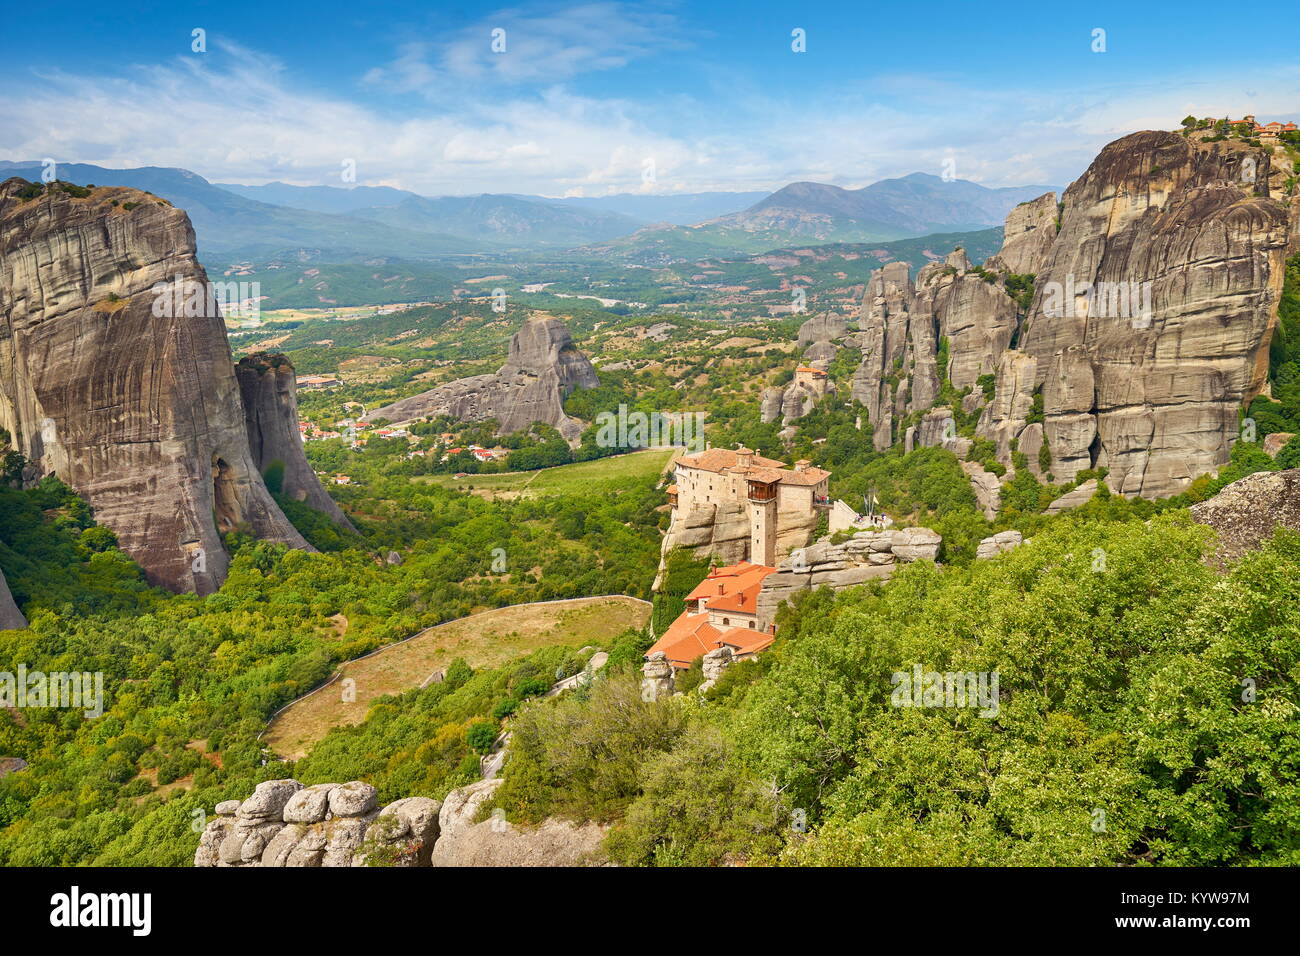 Das Kloster roussanou von Meteora, Griechenland Stockfoto